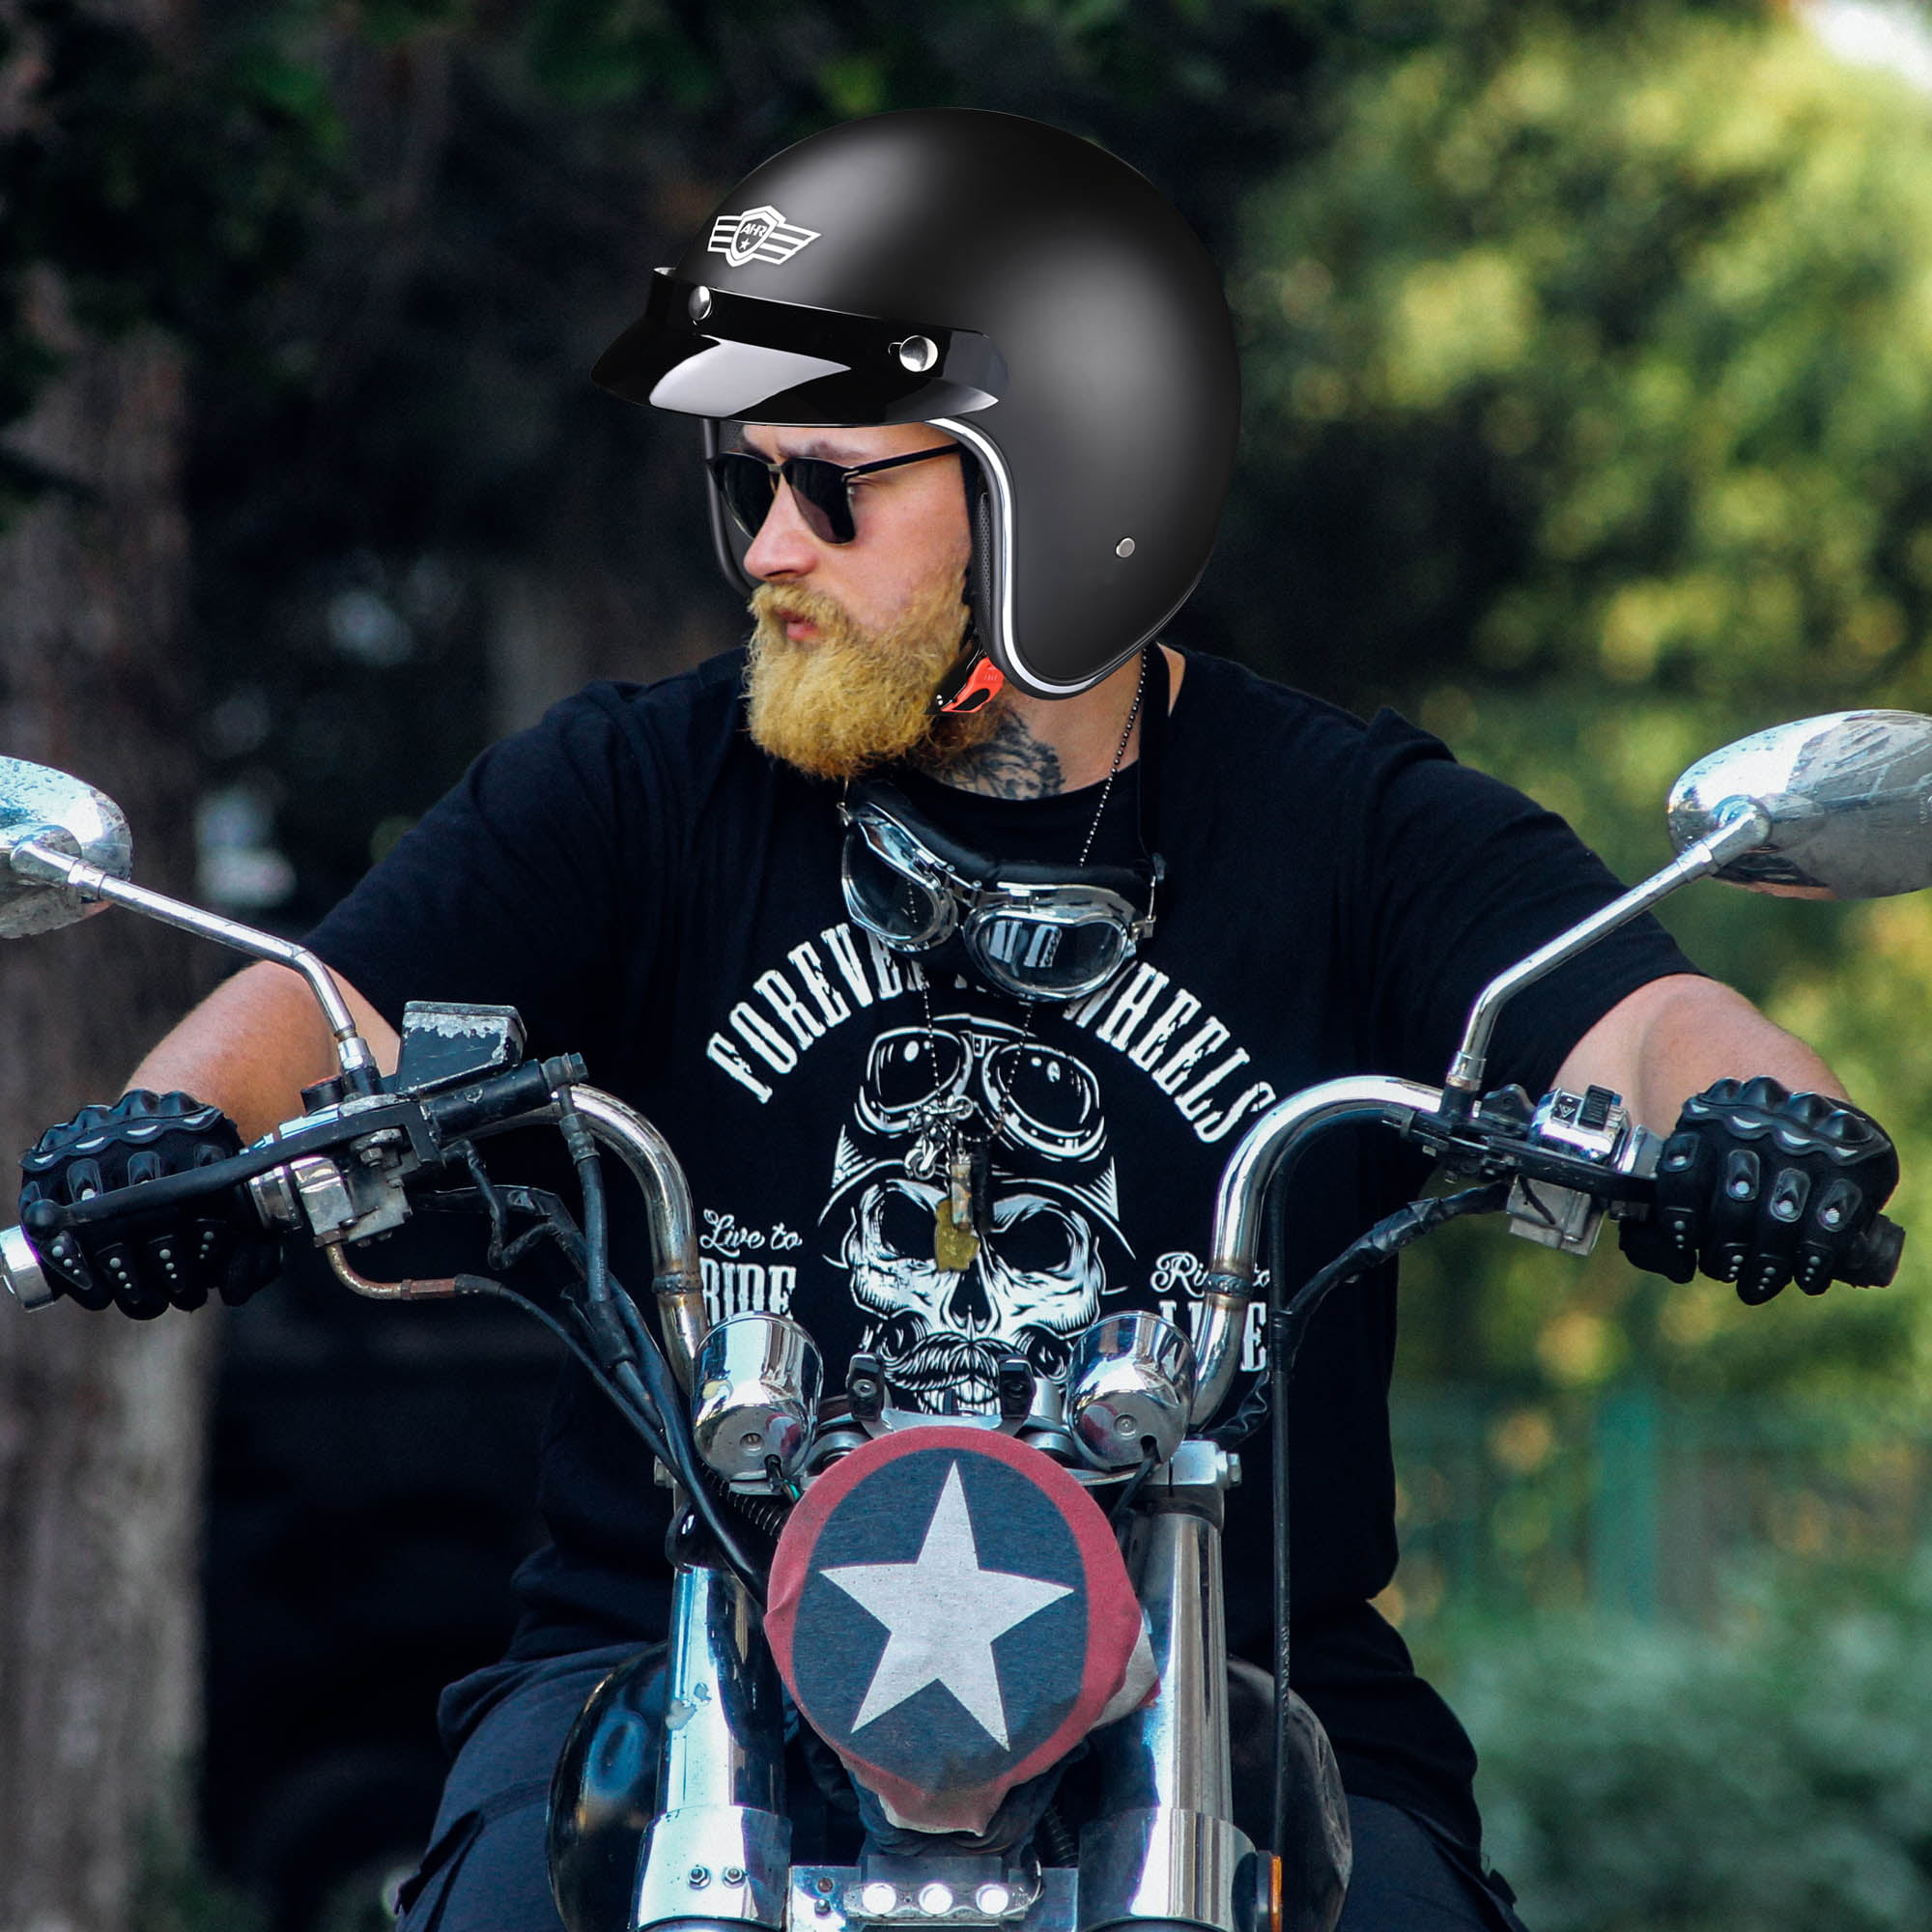 Patriotic Flag Style, L AHR RUN-O5 3/4 Open Face Motorcycle Helmet with Visor Retro Vintage Moped Bobber Scooter Cruiser Helmet for Men Women DOT 